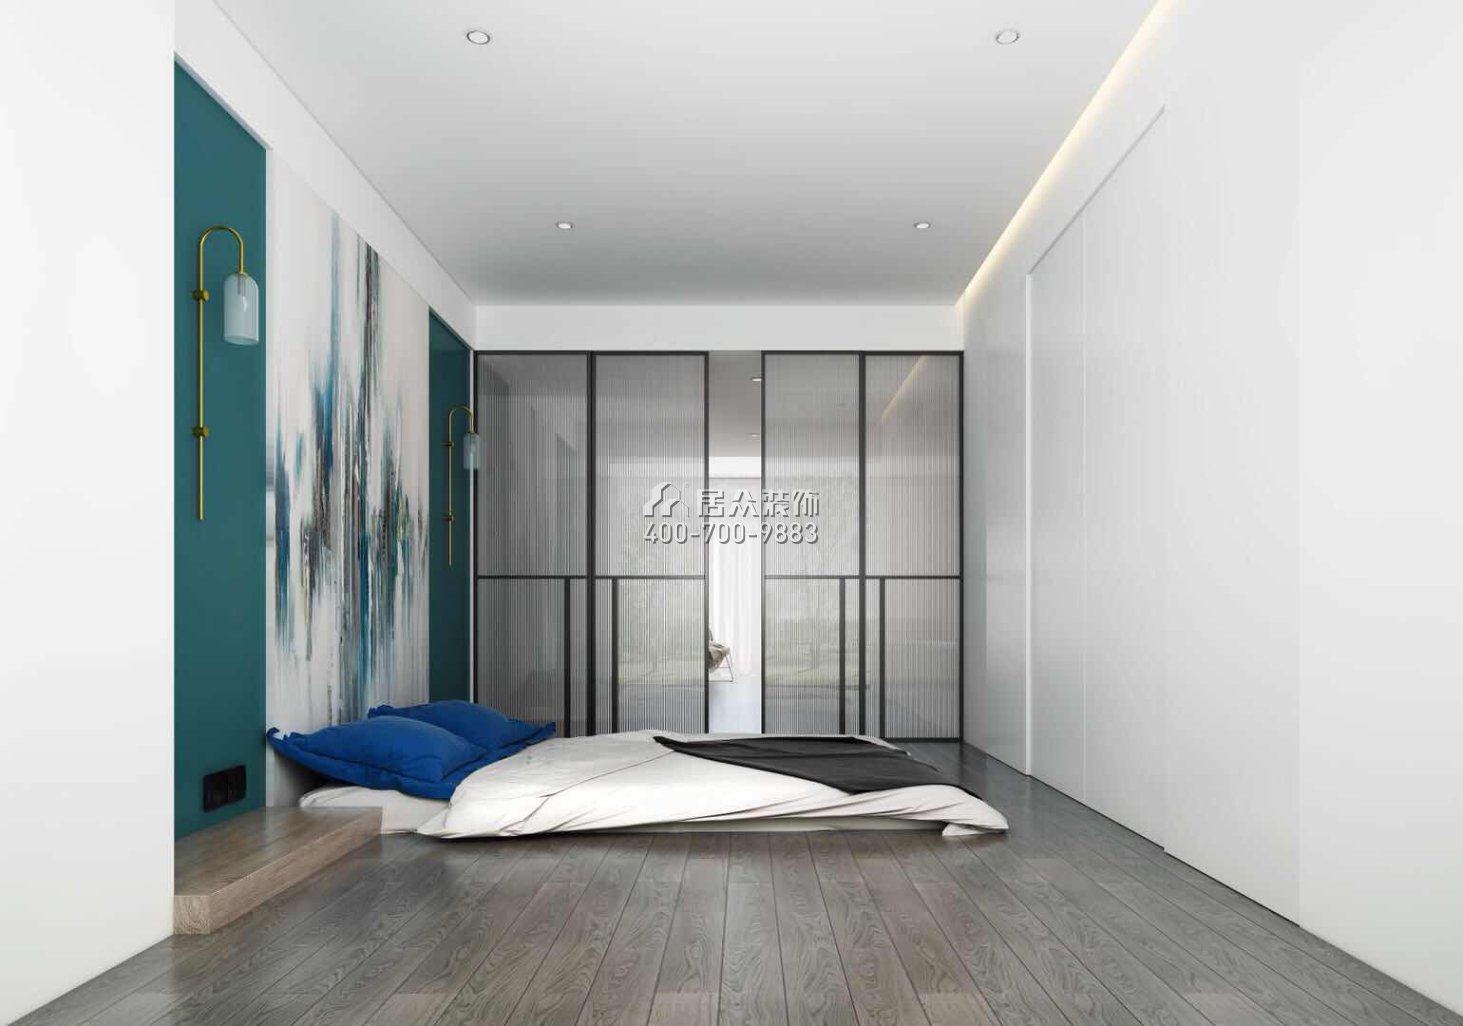 華發峰景灣217平方米現代簡約風格平層戶型臥室裝修效果圖